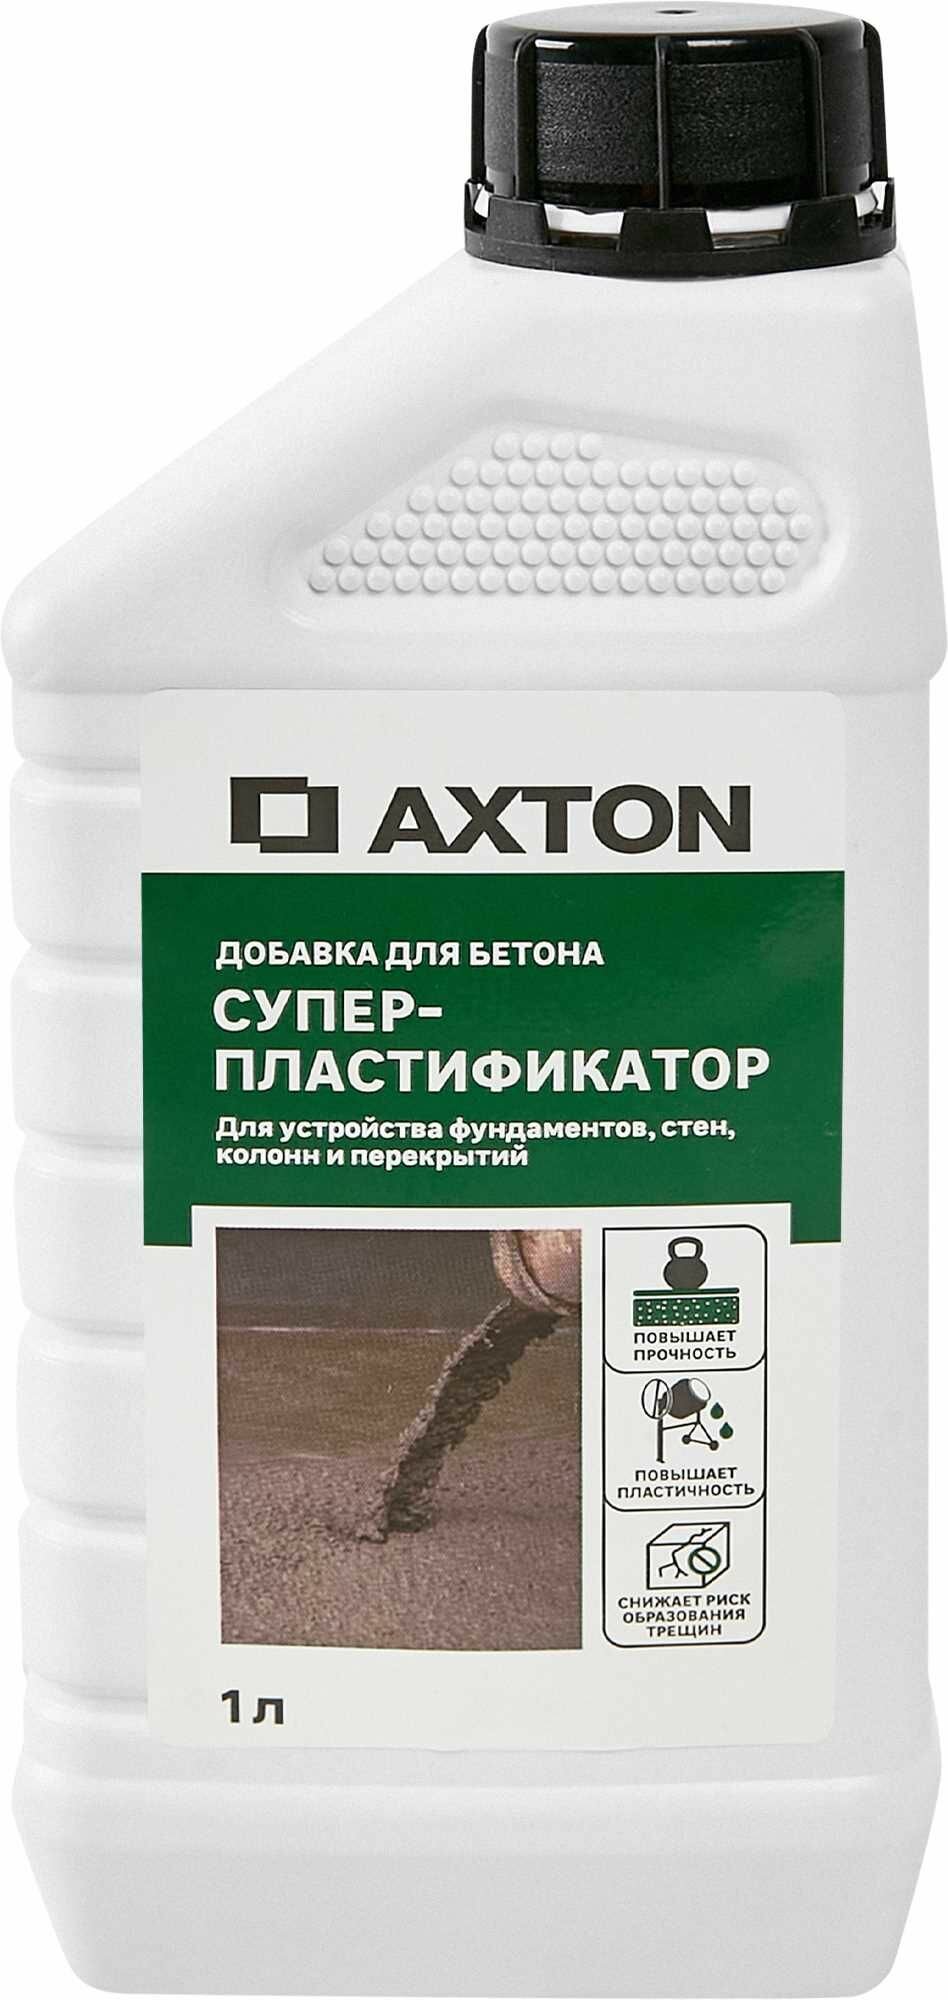 Суперпластификатор Axton 1 л